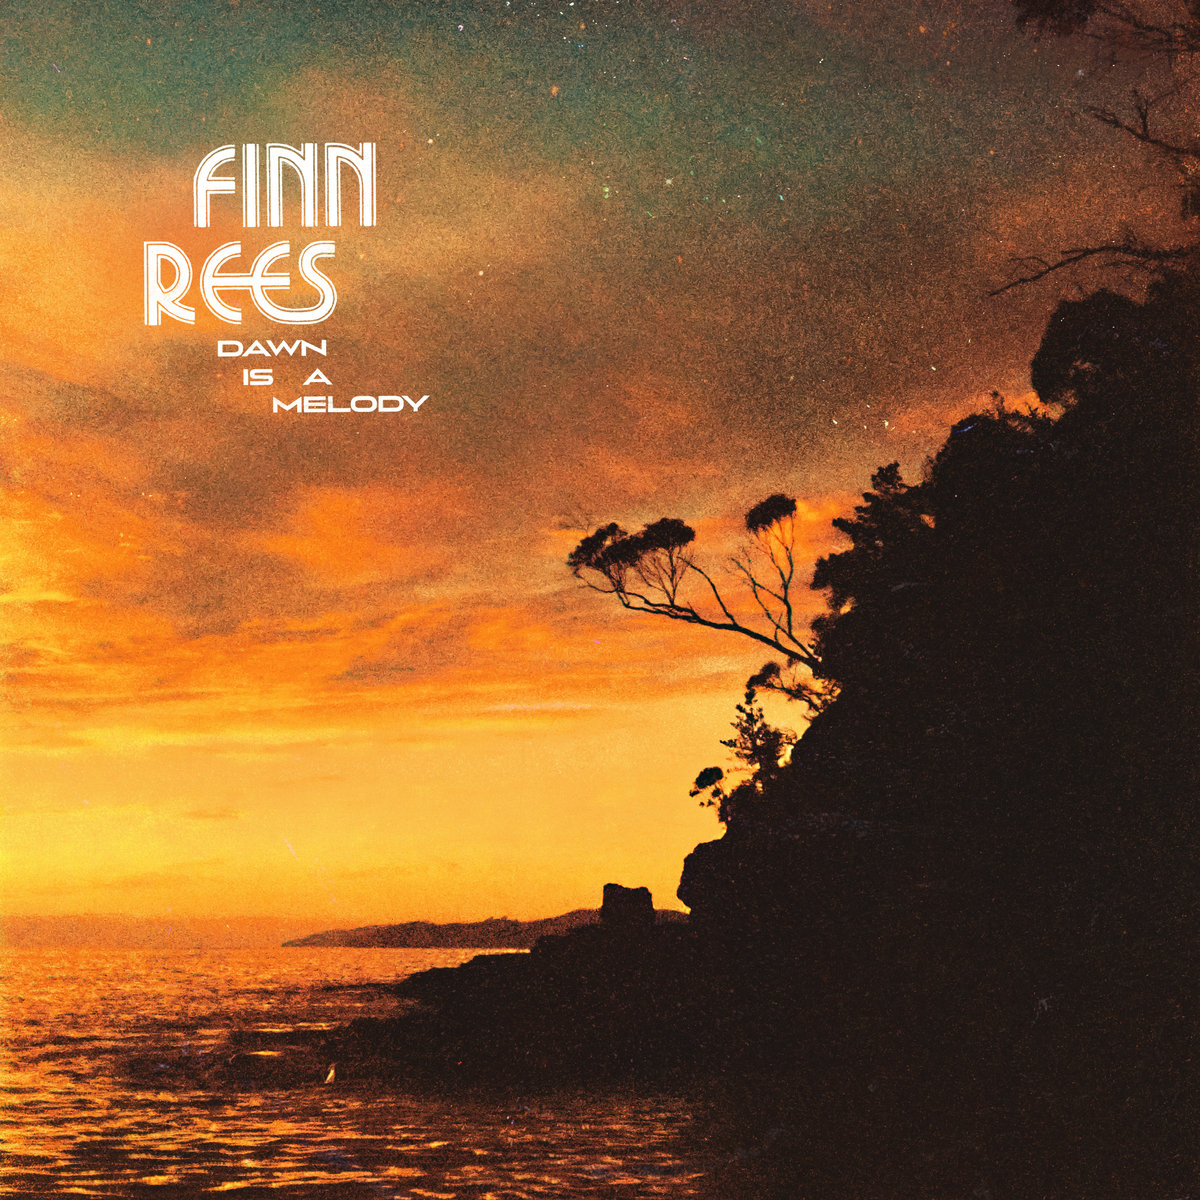 Finn Rees – Dawn is a melody